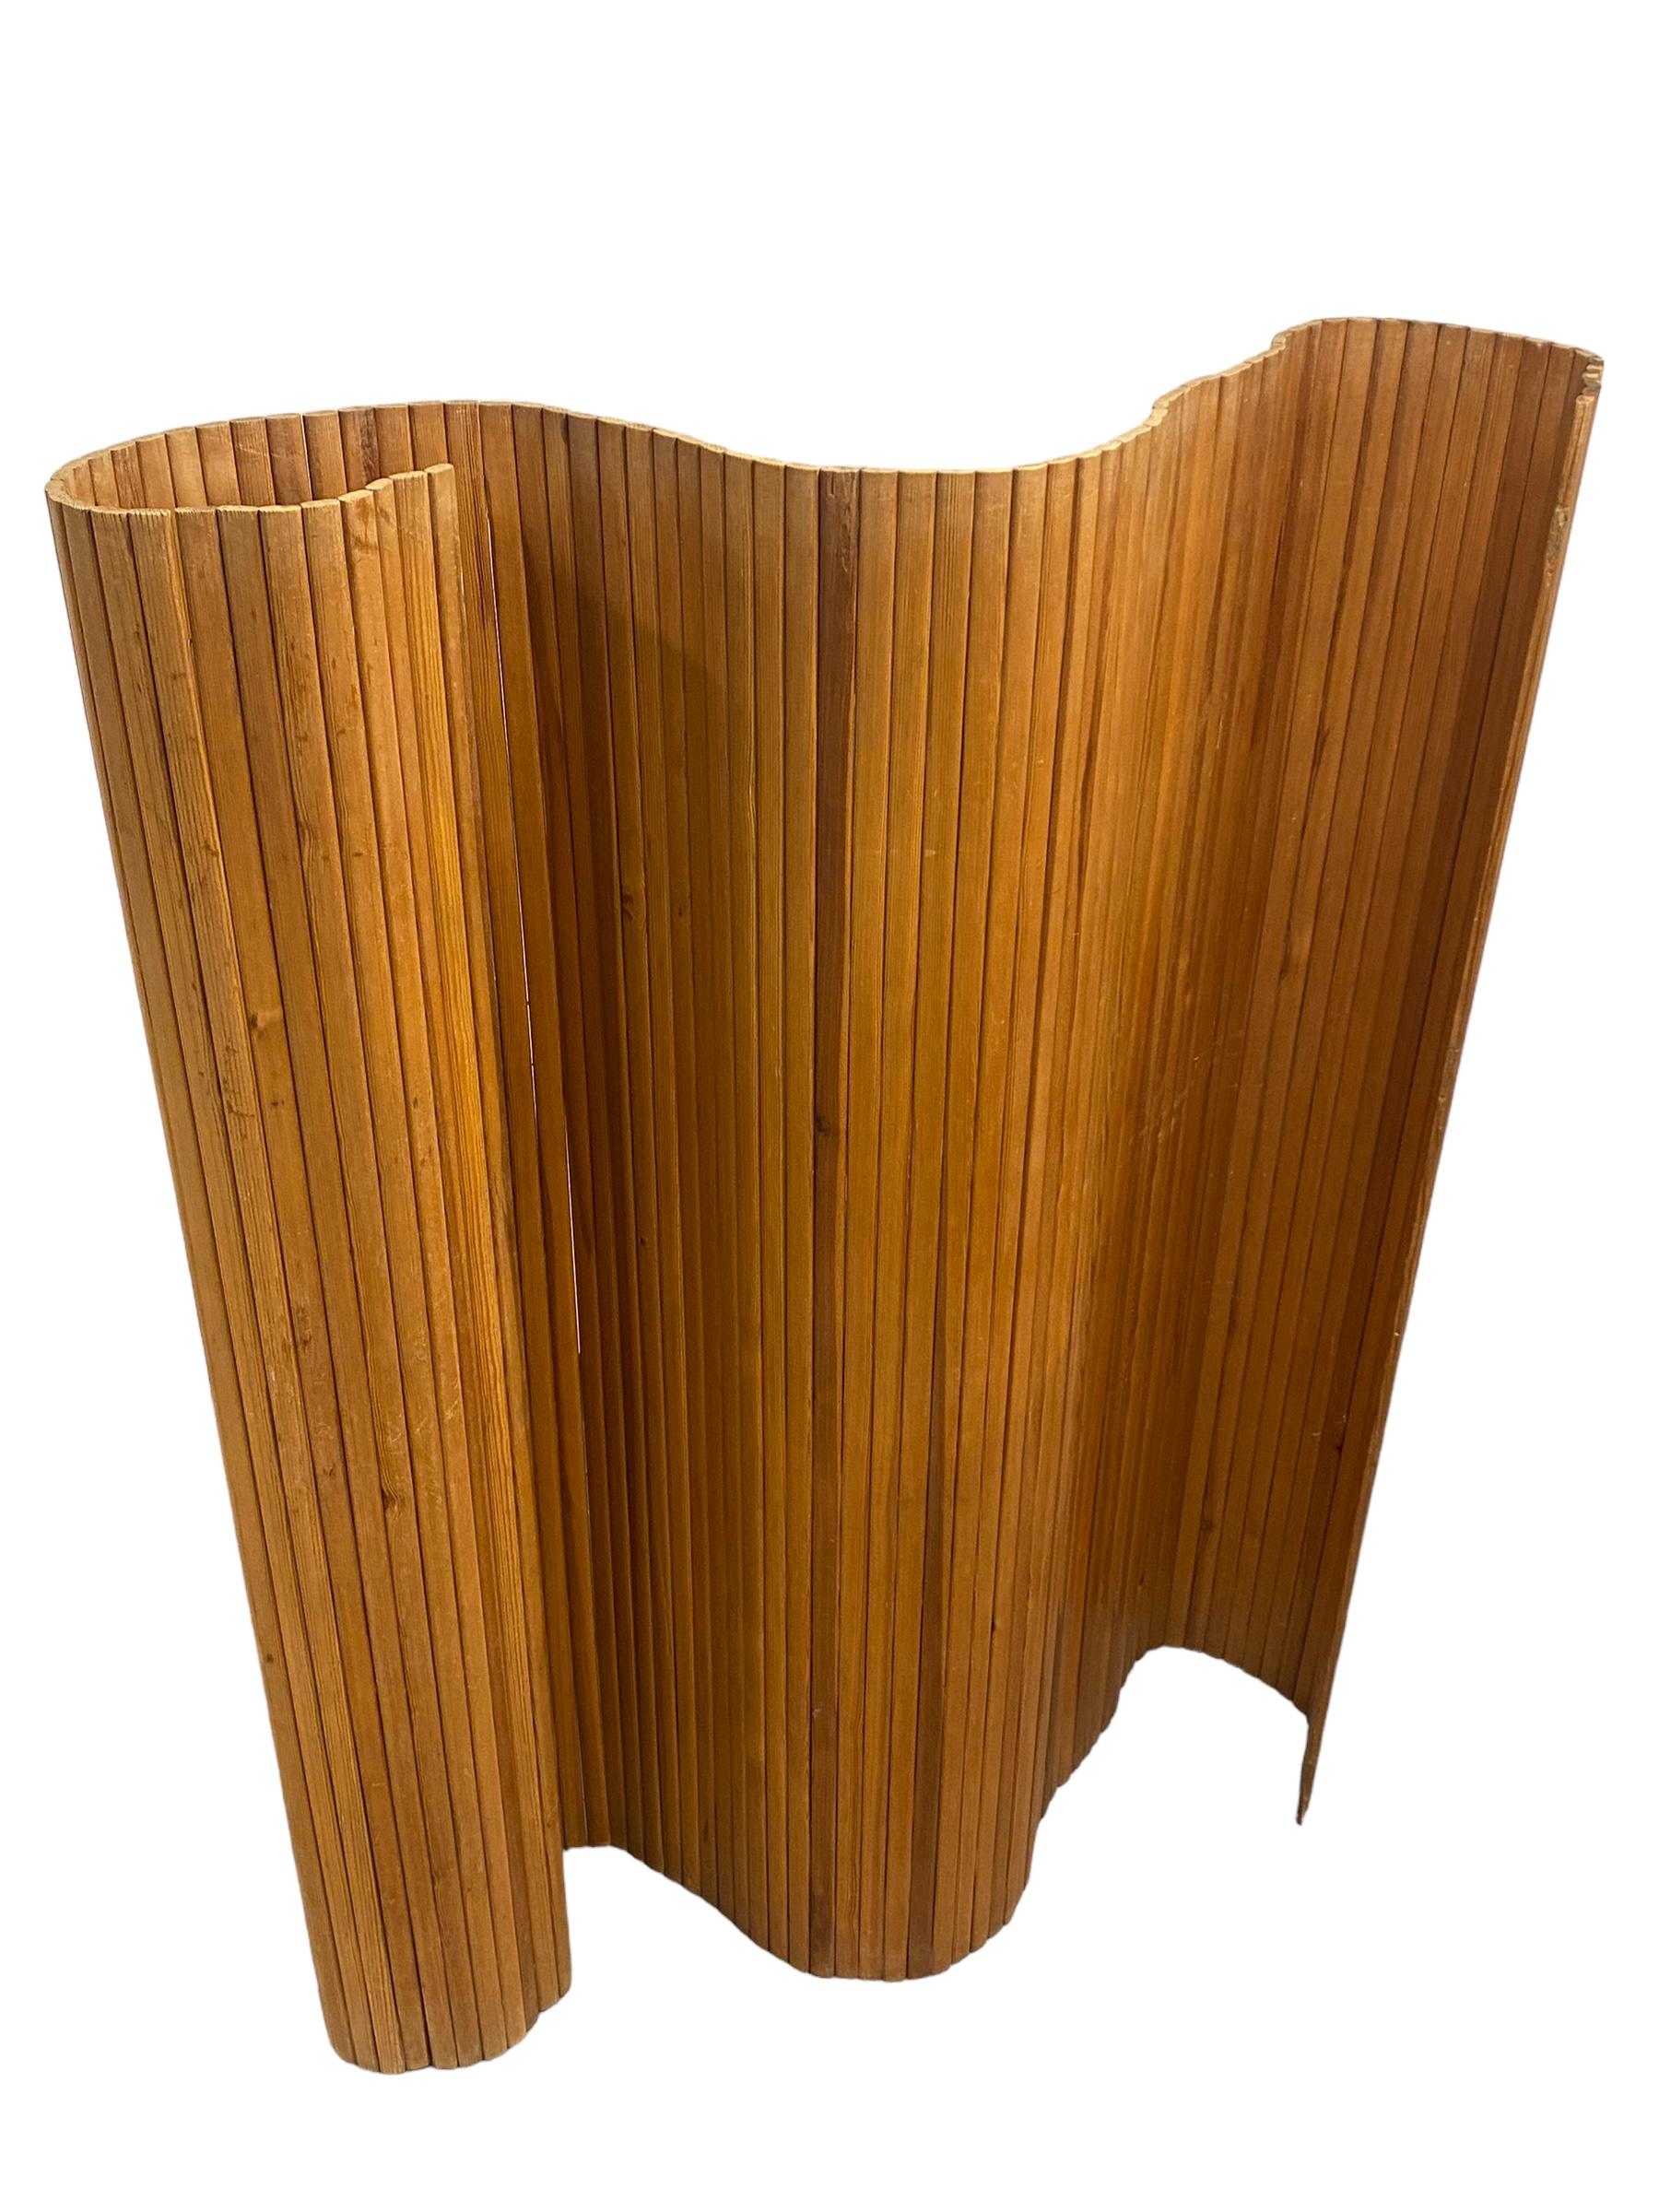 Die 100 Lattenwand / Raumteiler von Alvar Aalto ist ein dynamisches Interieur-Element, das aus schmalen, vertikalen Kiefernlatten zusammengesetzt ist und aufgerollt und geöffnet werden kann - als gerade oder in zahlreichen gebogenen Positionen. Mit